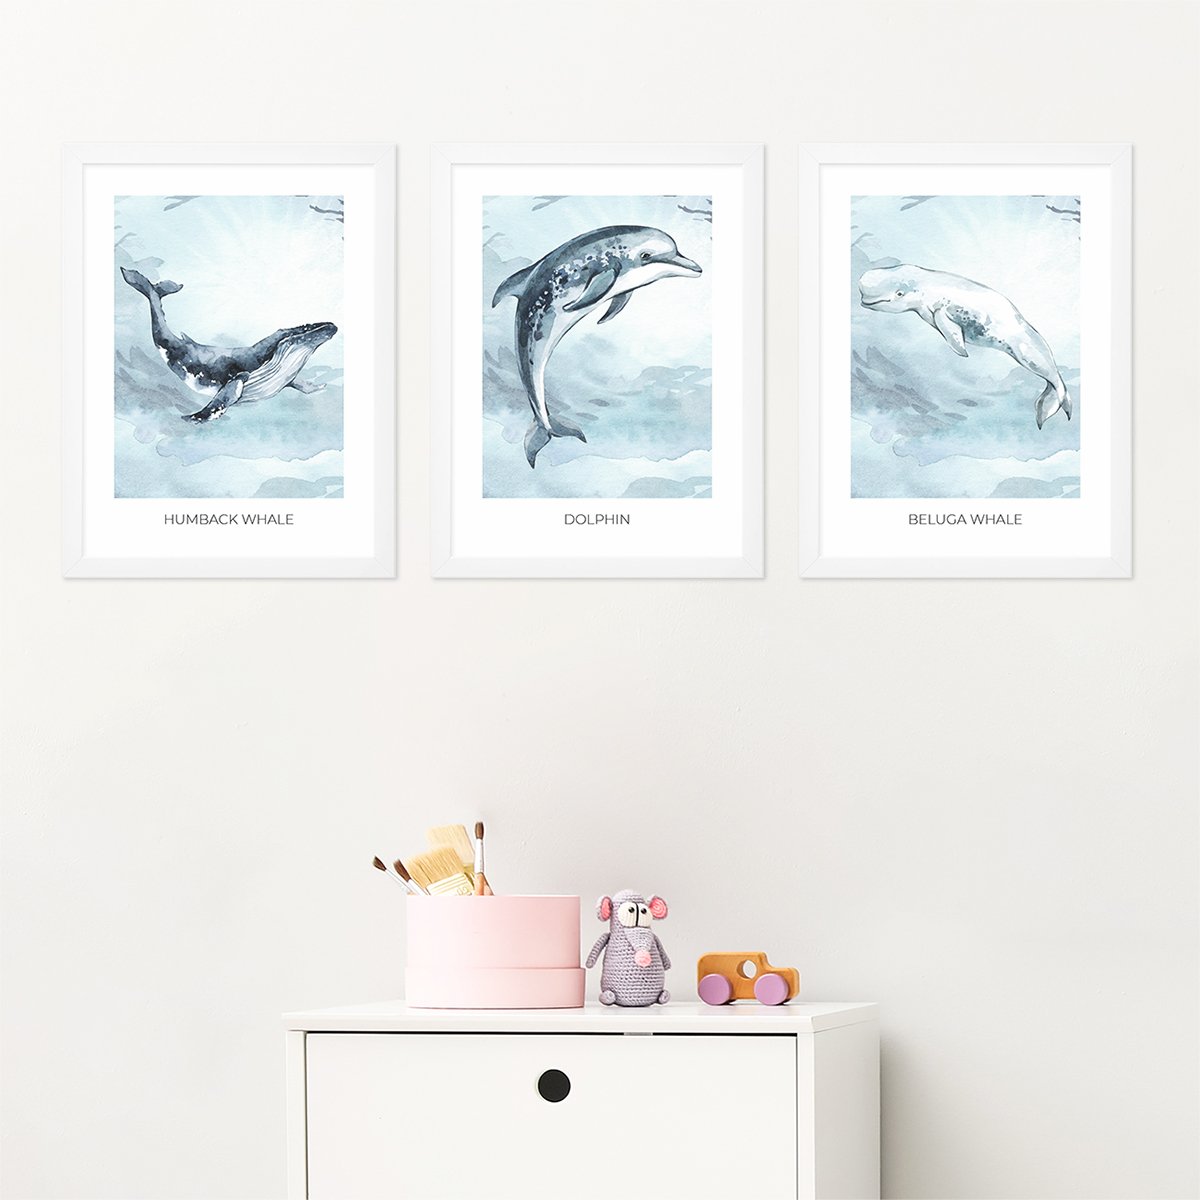 Plakaty do pokoju dziecięcego ze zwierzętami oceanicznymi - humbakiem, delfinem i wielorybem